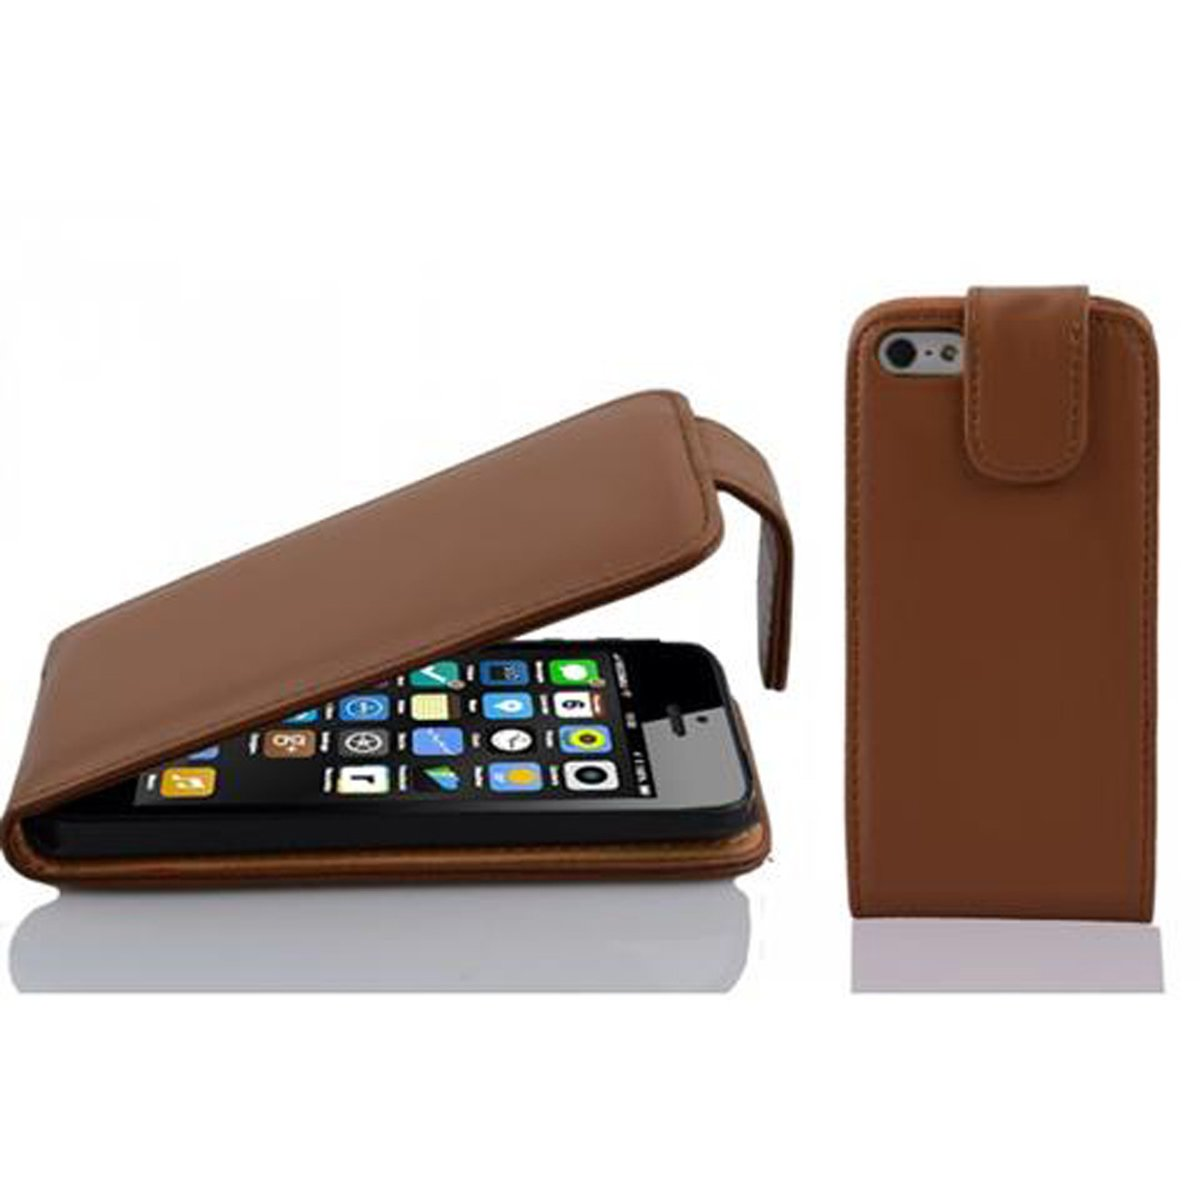 CADORABO Handyhülle im Flip Style, KAKAO iPhone 5C, Cover, Apple, BRAUN Flip